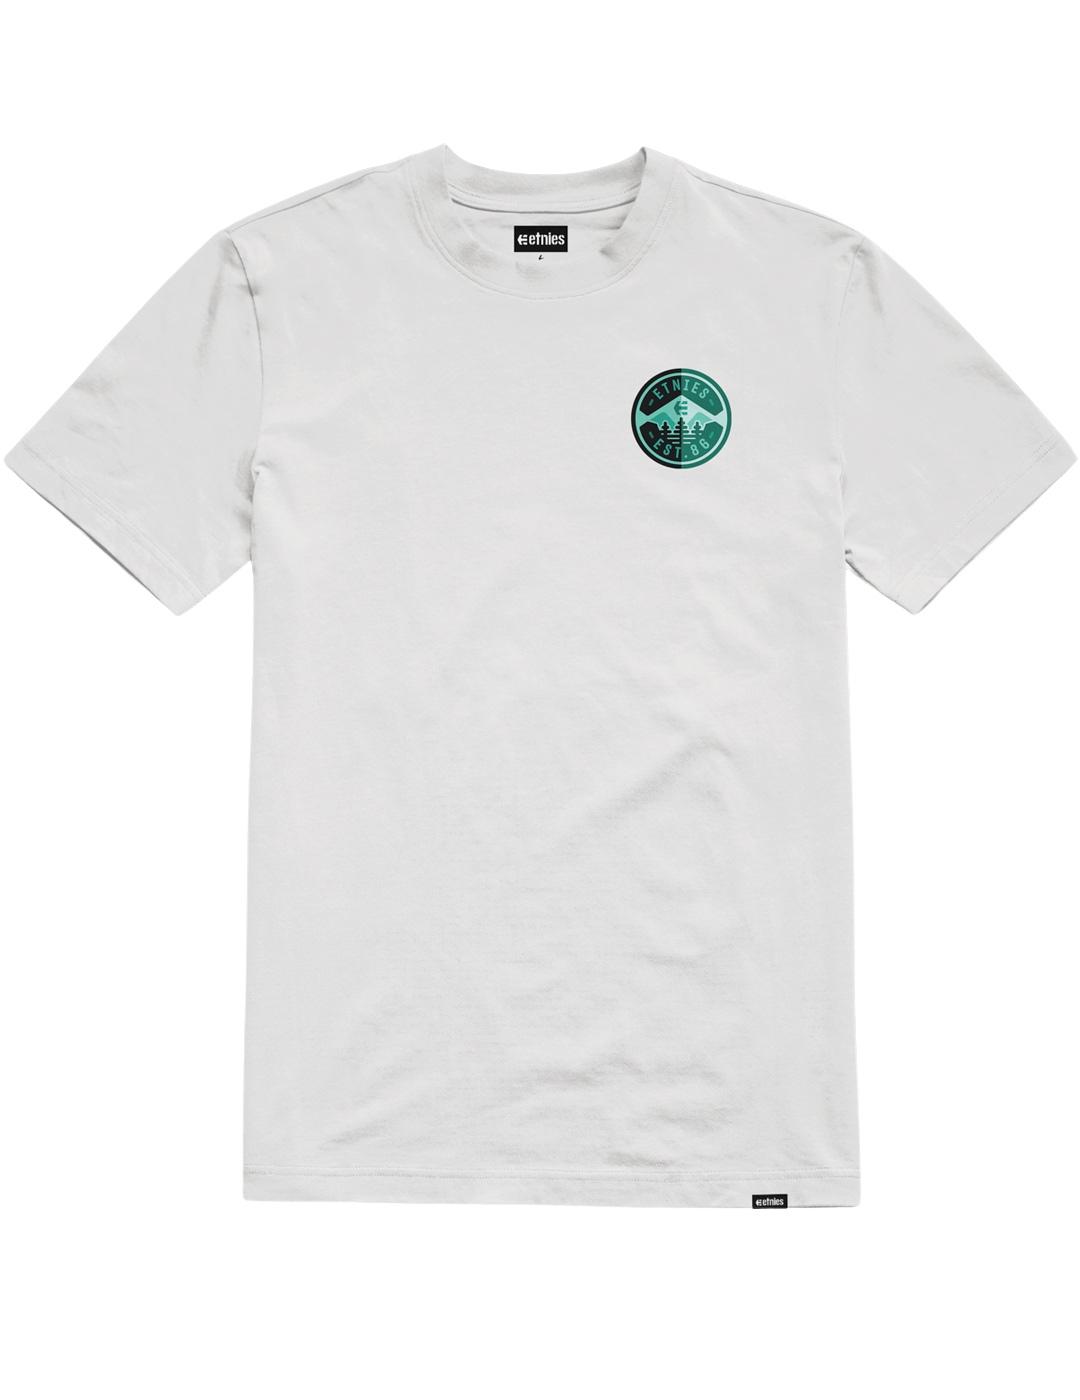 Camiseta ETNIES 3 PINES - White